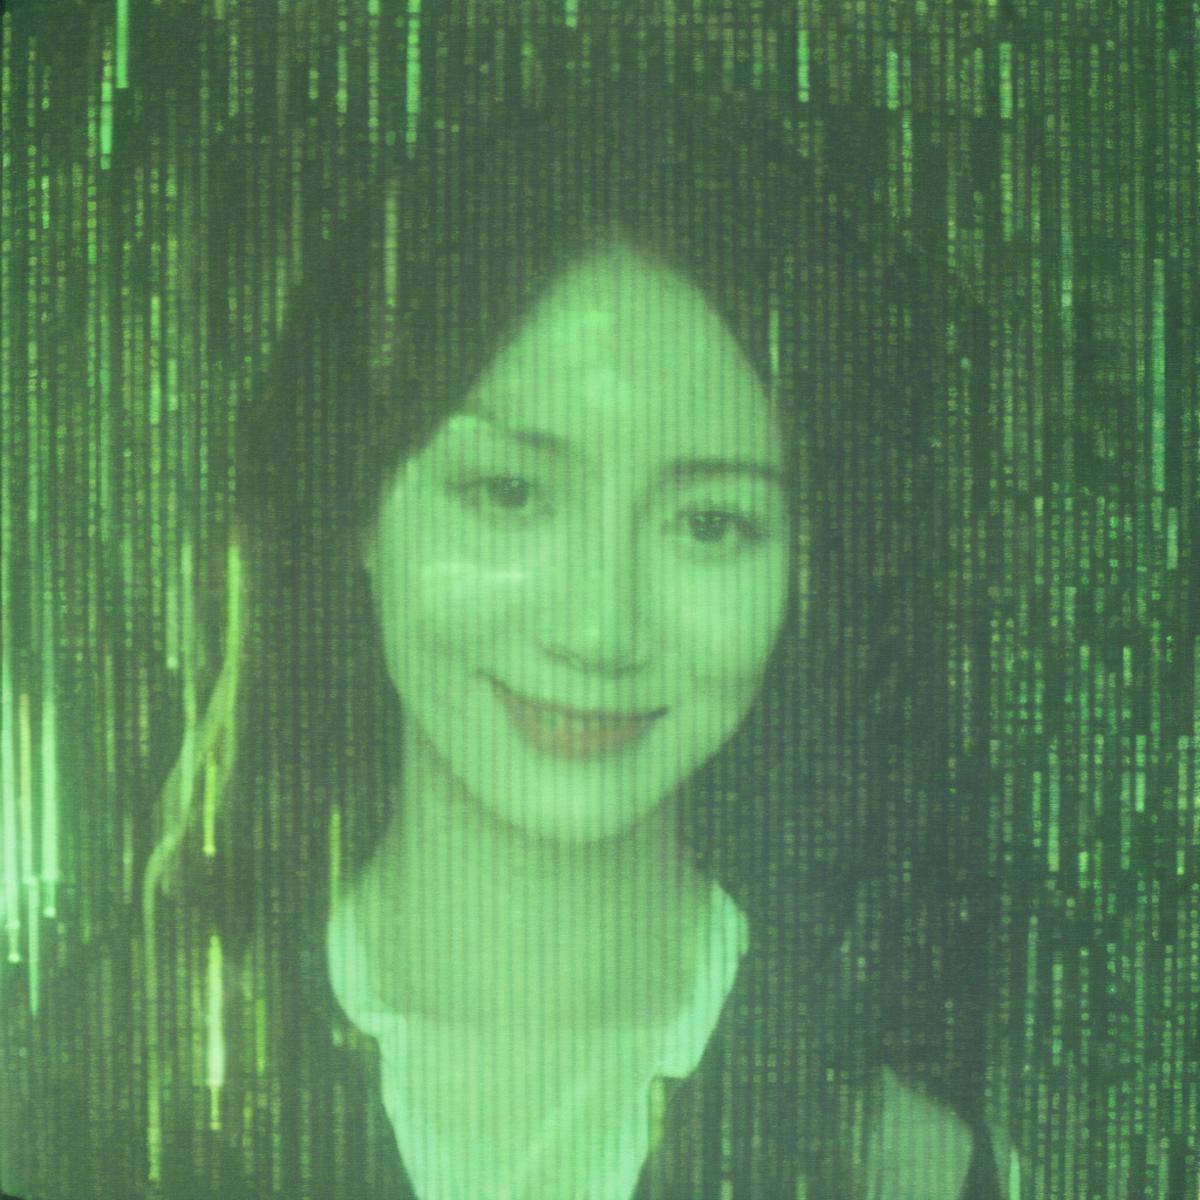 AI model image by yi_yu